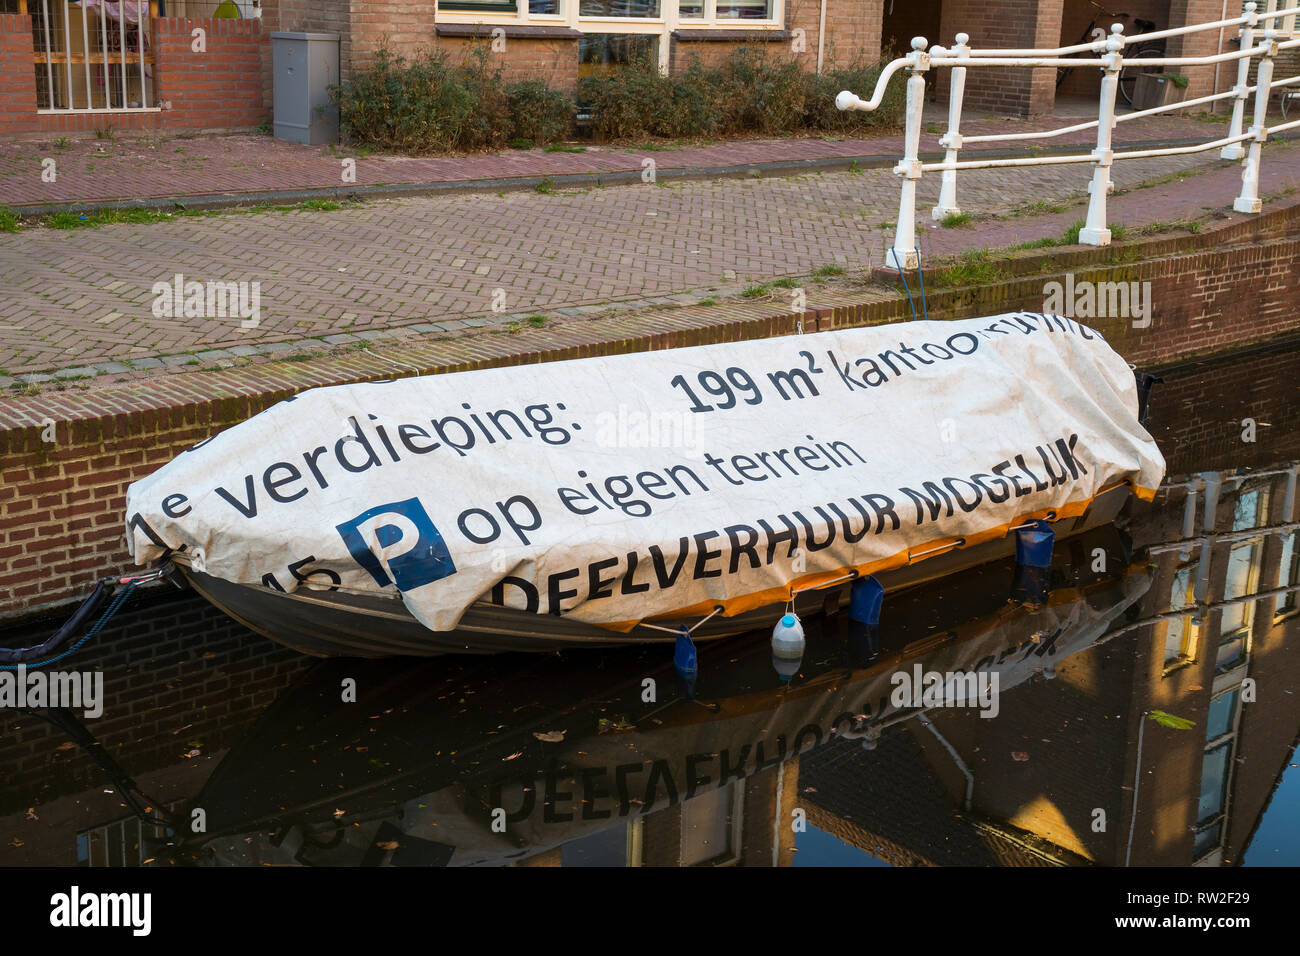 Leiden, Pays-Bas - 25 Février 2019 : Funny texte néerlandais sur le bateau une bâche, à louer 199 mètres carrés au premier étage Banque D'Images